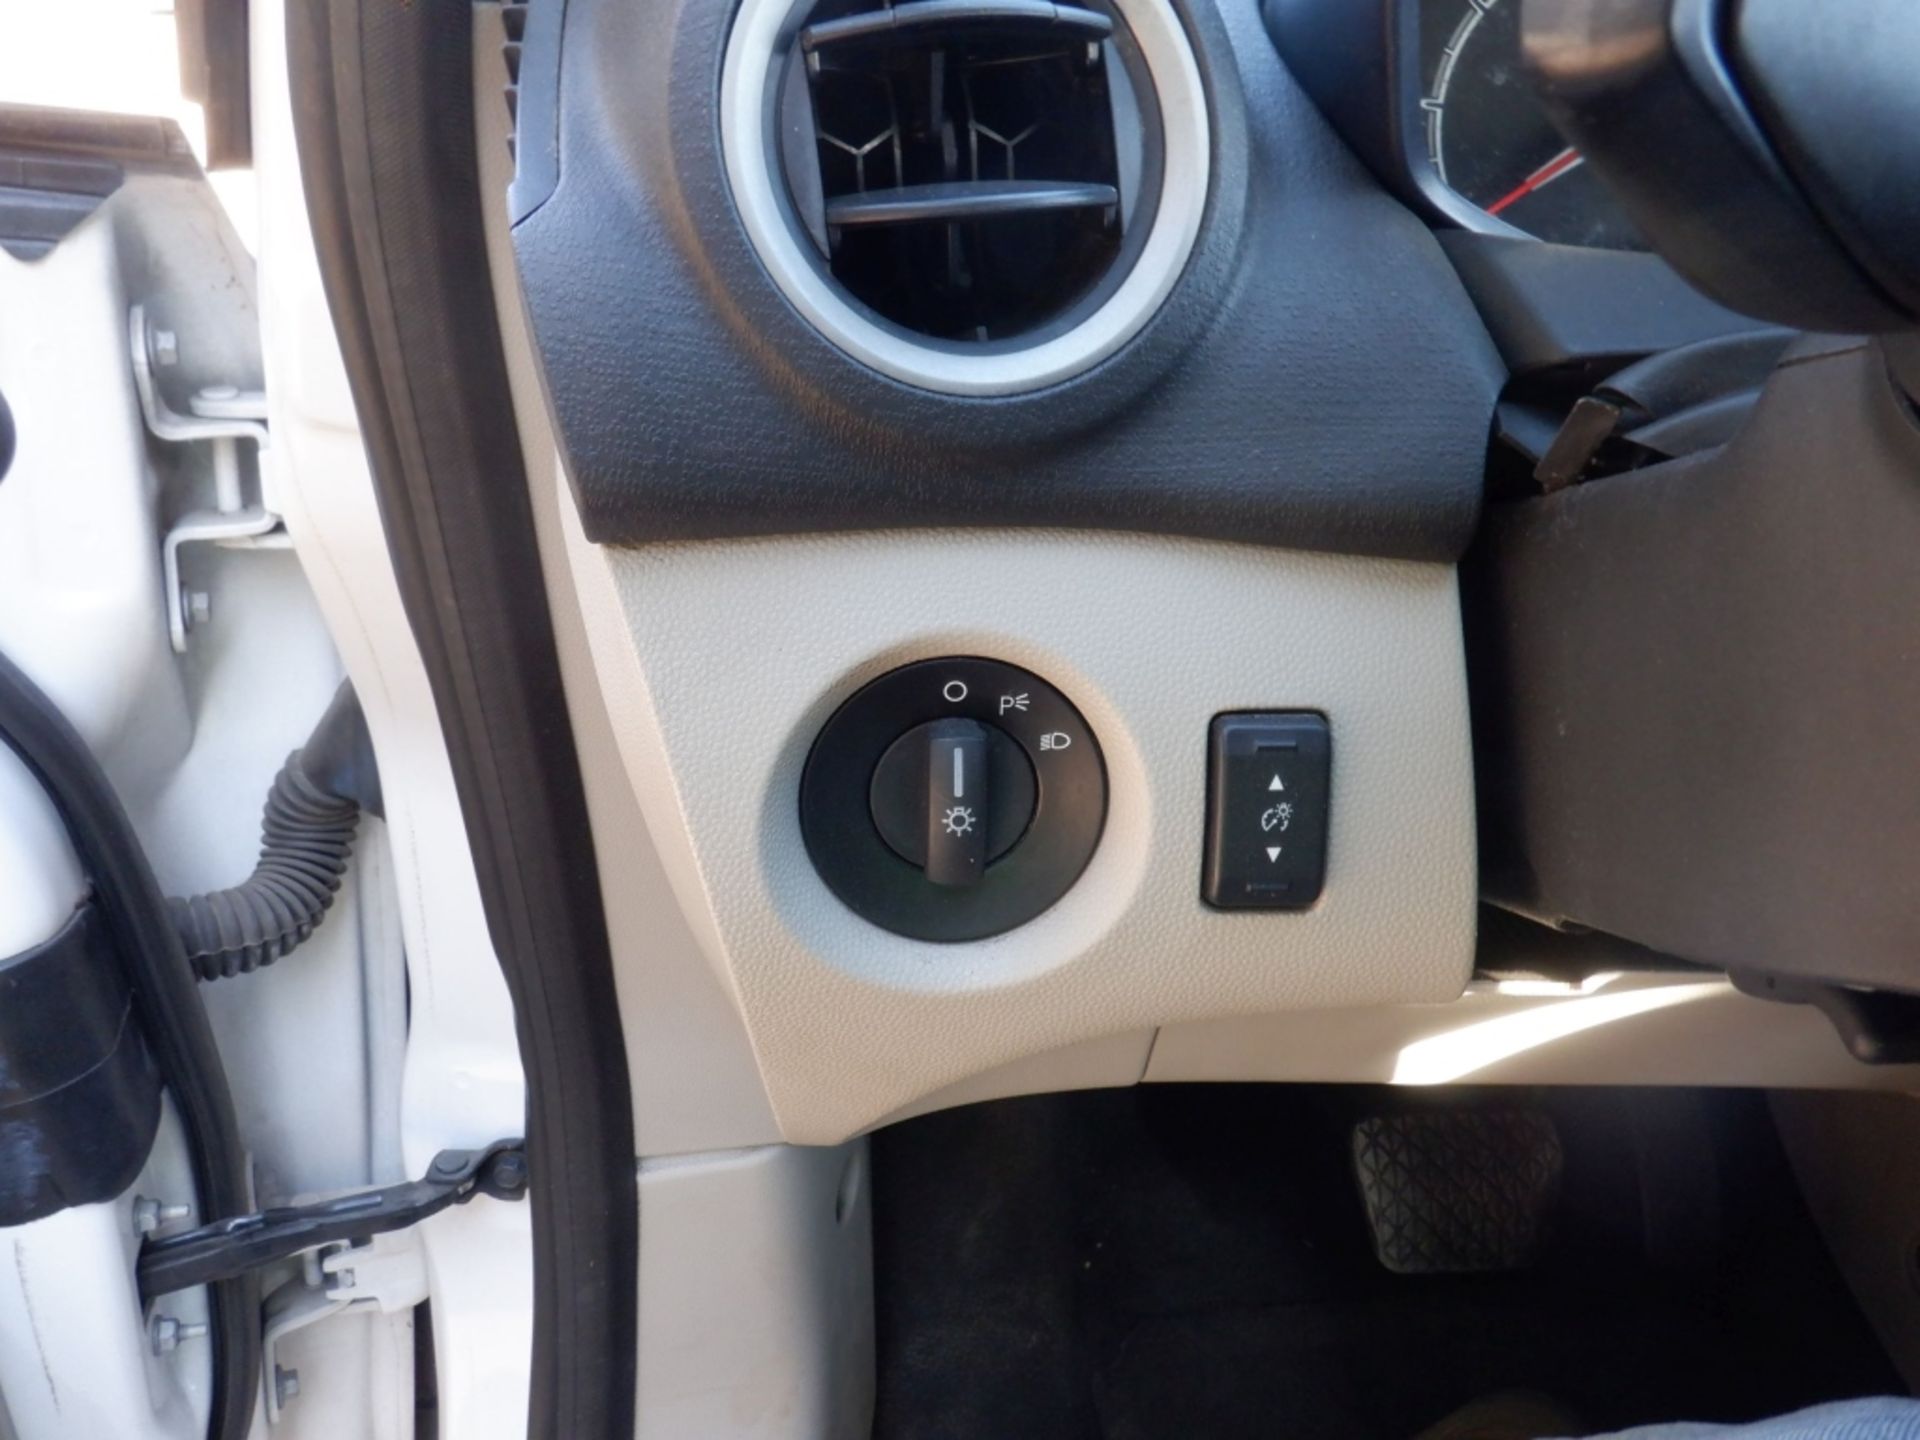 2013 Ford Fiesta Sedan, - Image 10 of 18